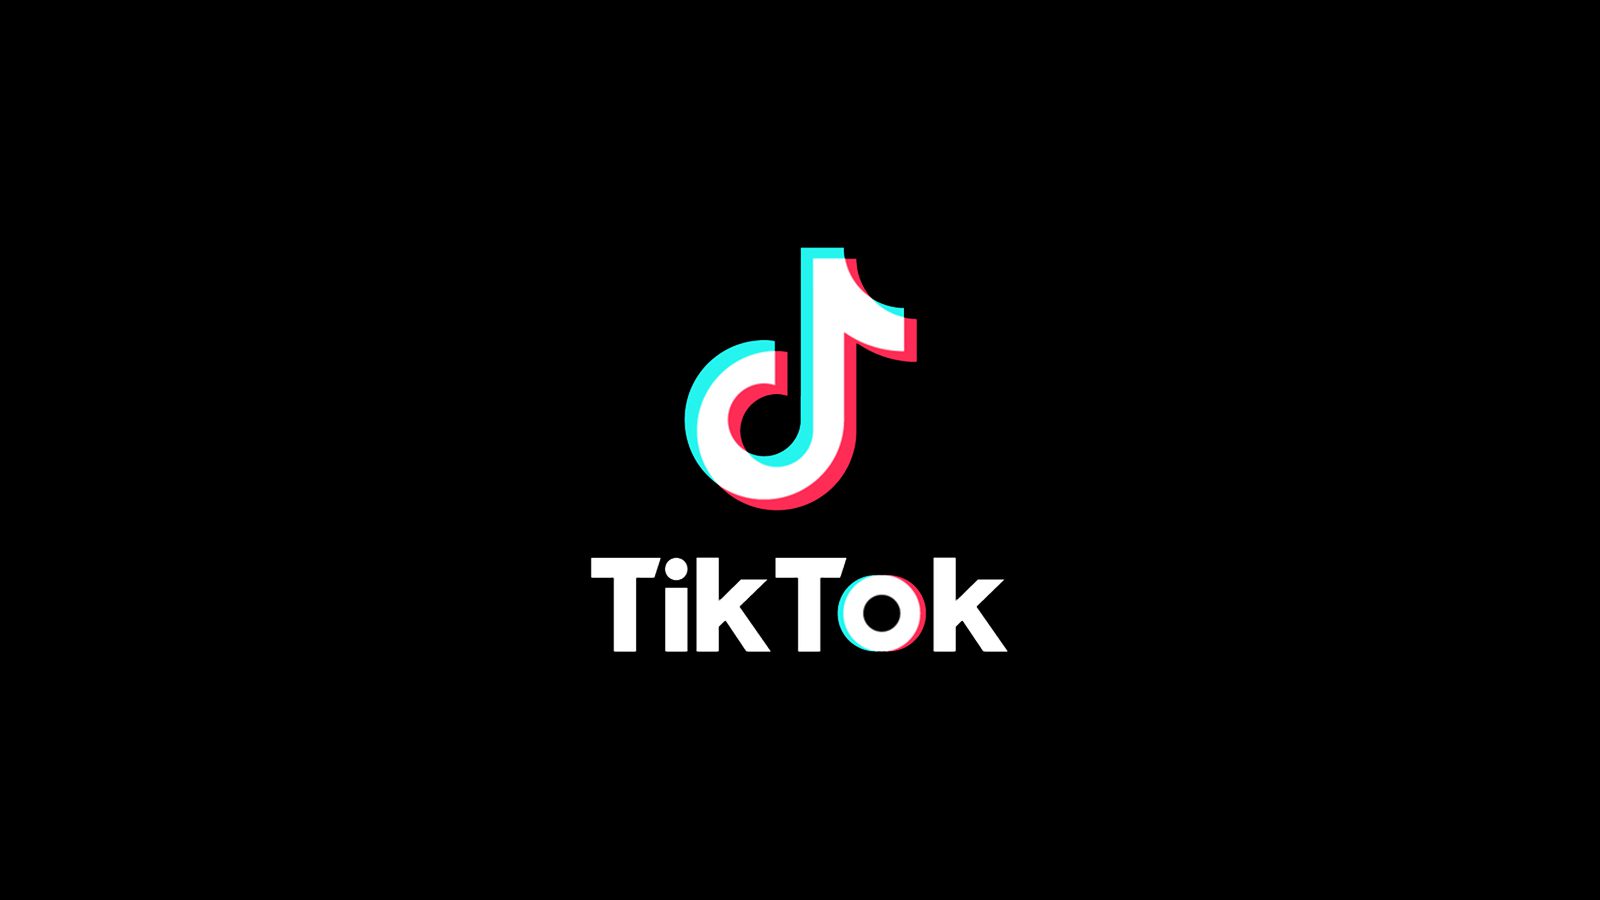 20 Most liked Videos on Tiktok 2021